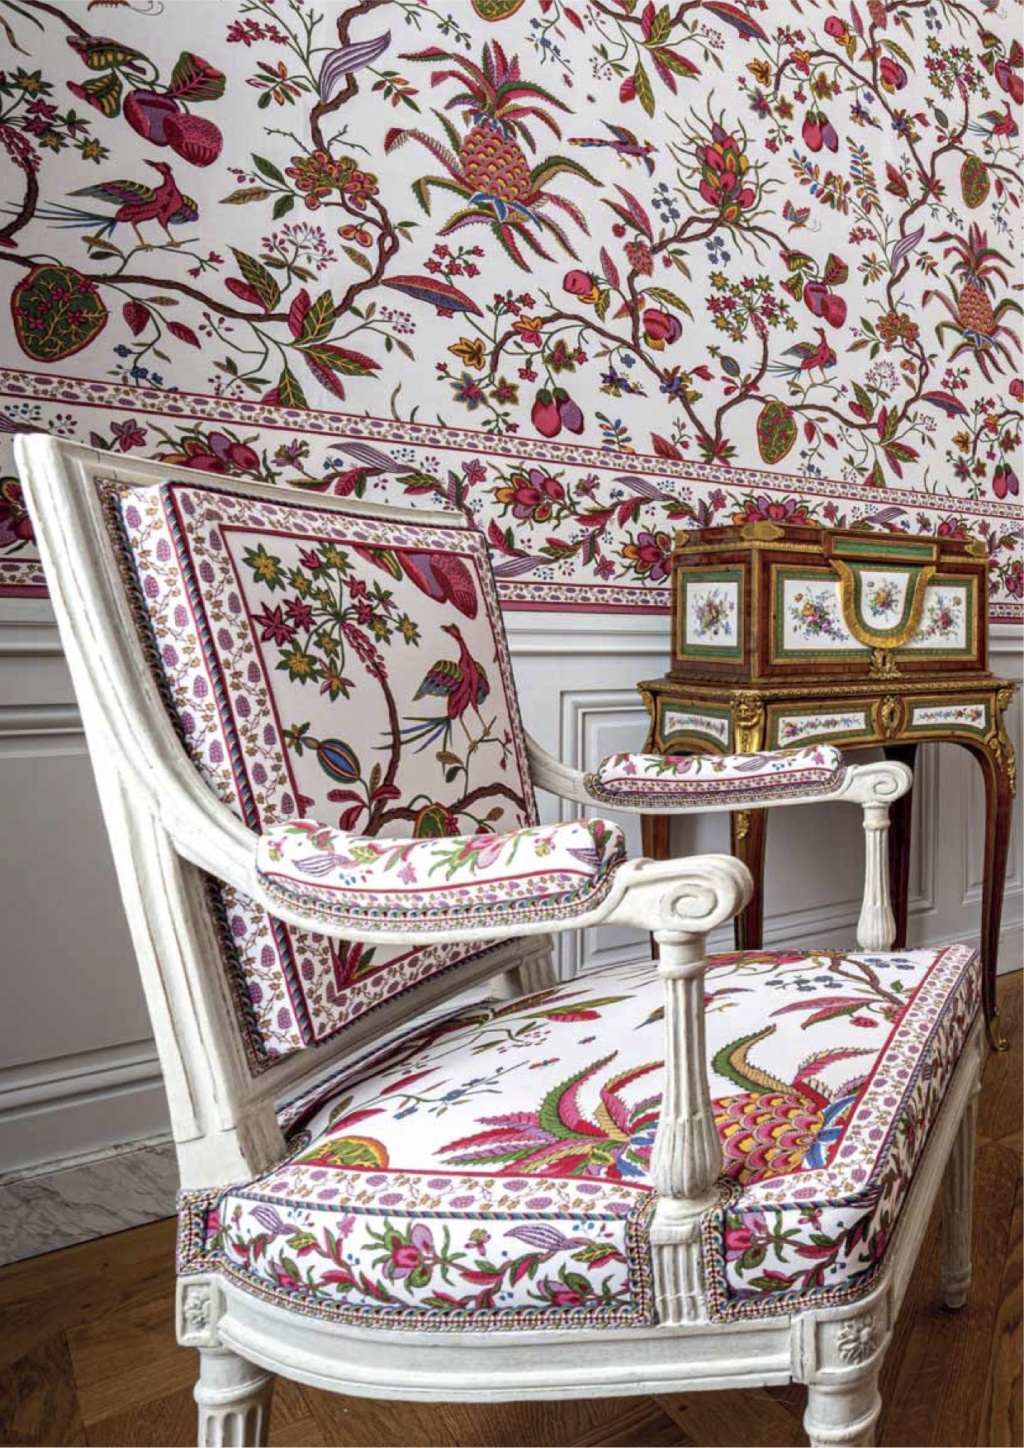 Les cabinets intérieurs de Marie-Antoinette au château de Versailles - Page 3 Dp_cab28